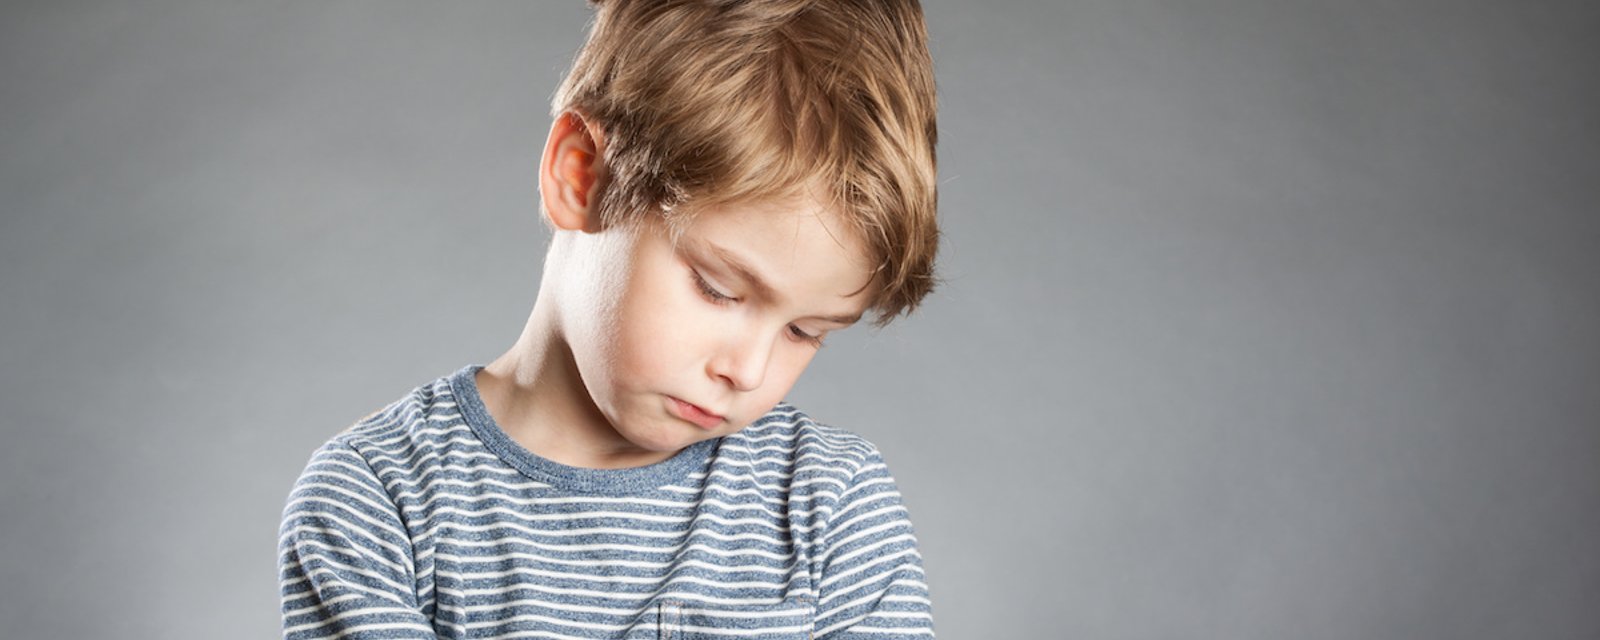 6 choses qui peuvent indiquer qu'un enfant souffre d'anxiété